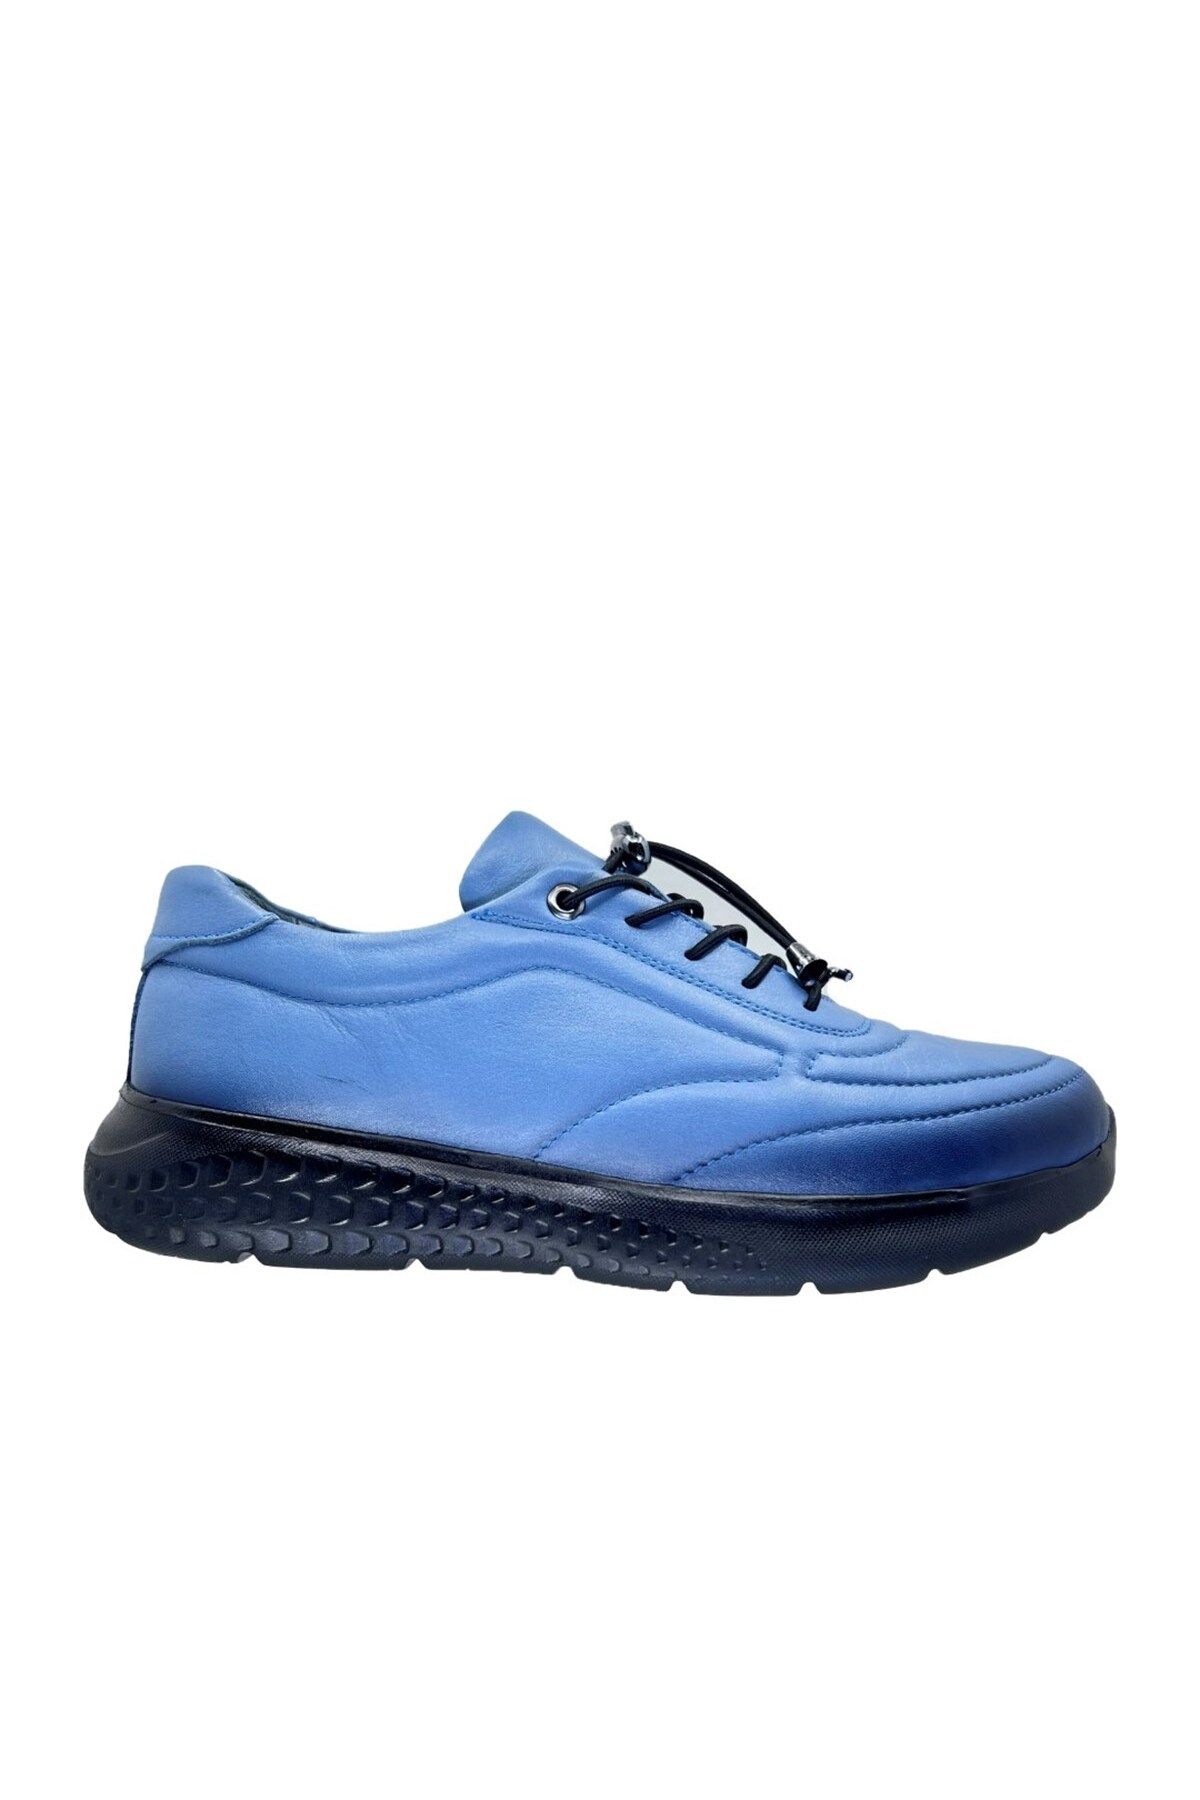 ortopedia Kadın Ayakkabı 1785 Açık Mavi